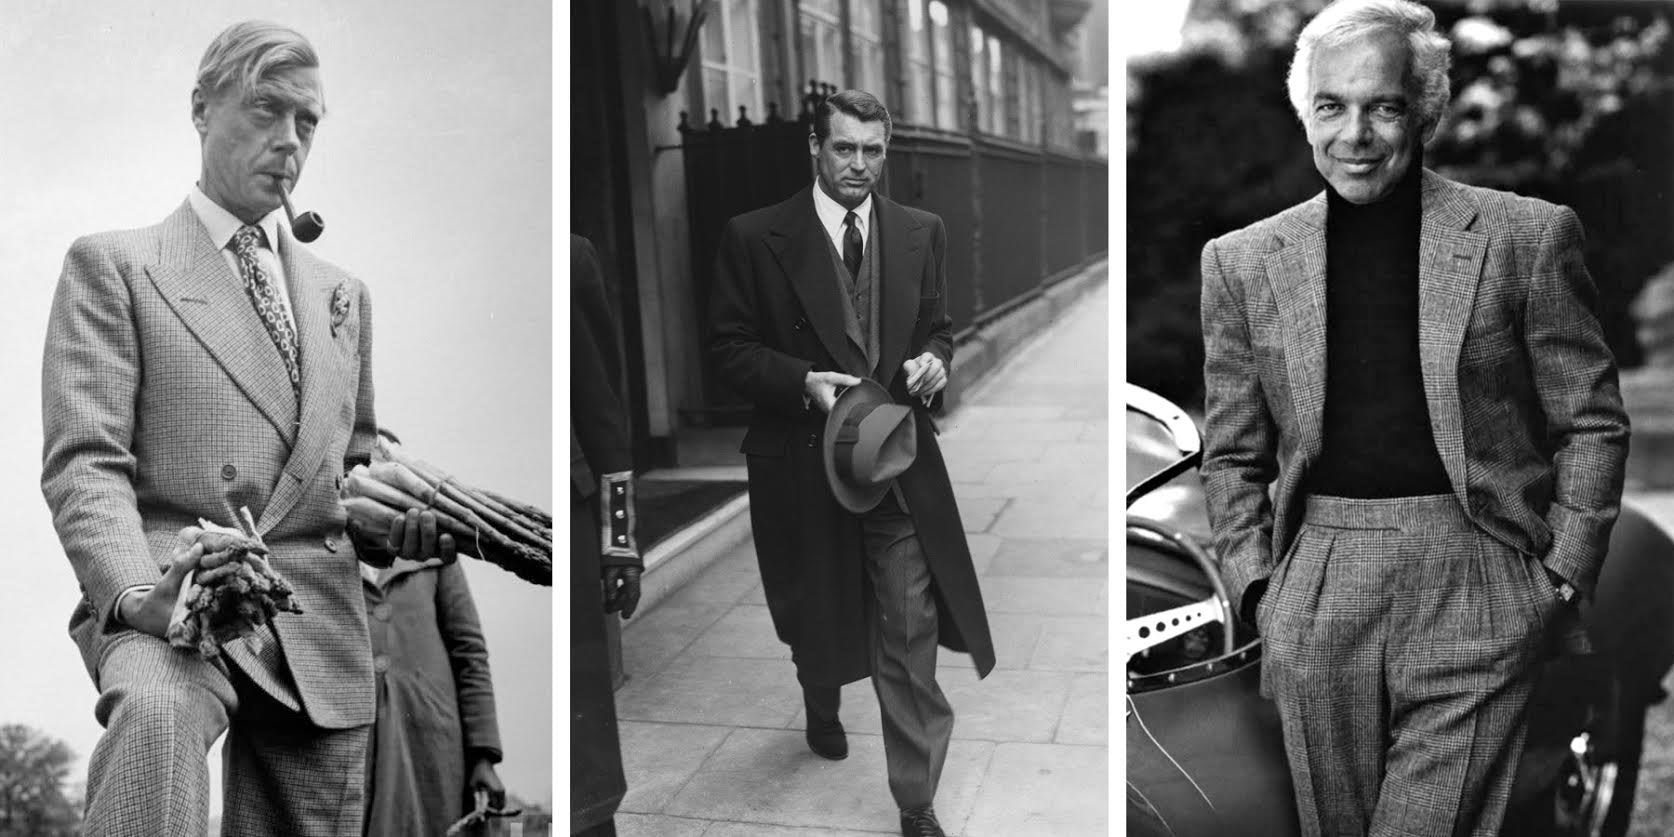 Explore 1950s Men's Fashion - Suits, Ties, Shoes & More